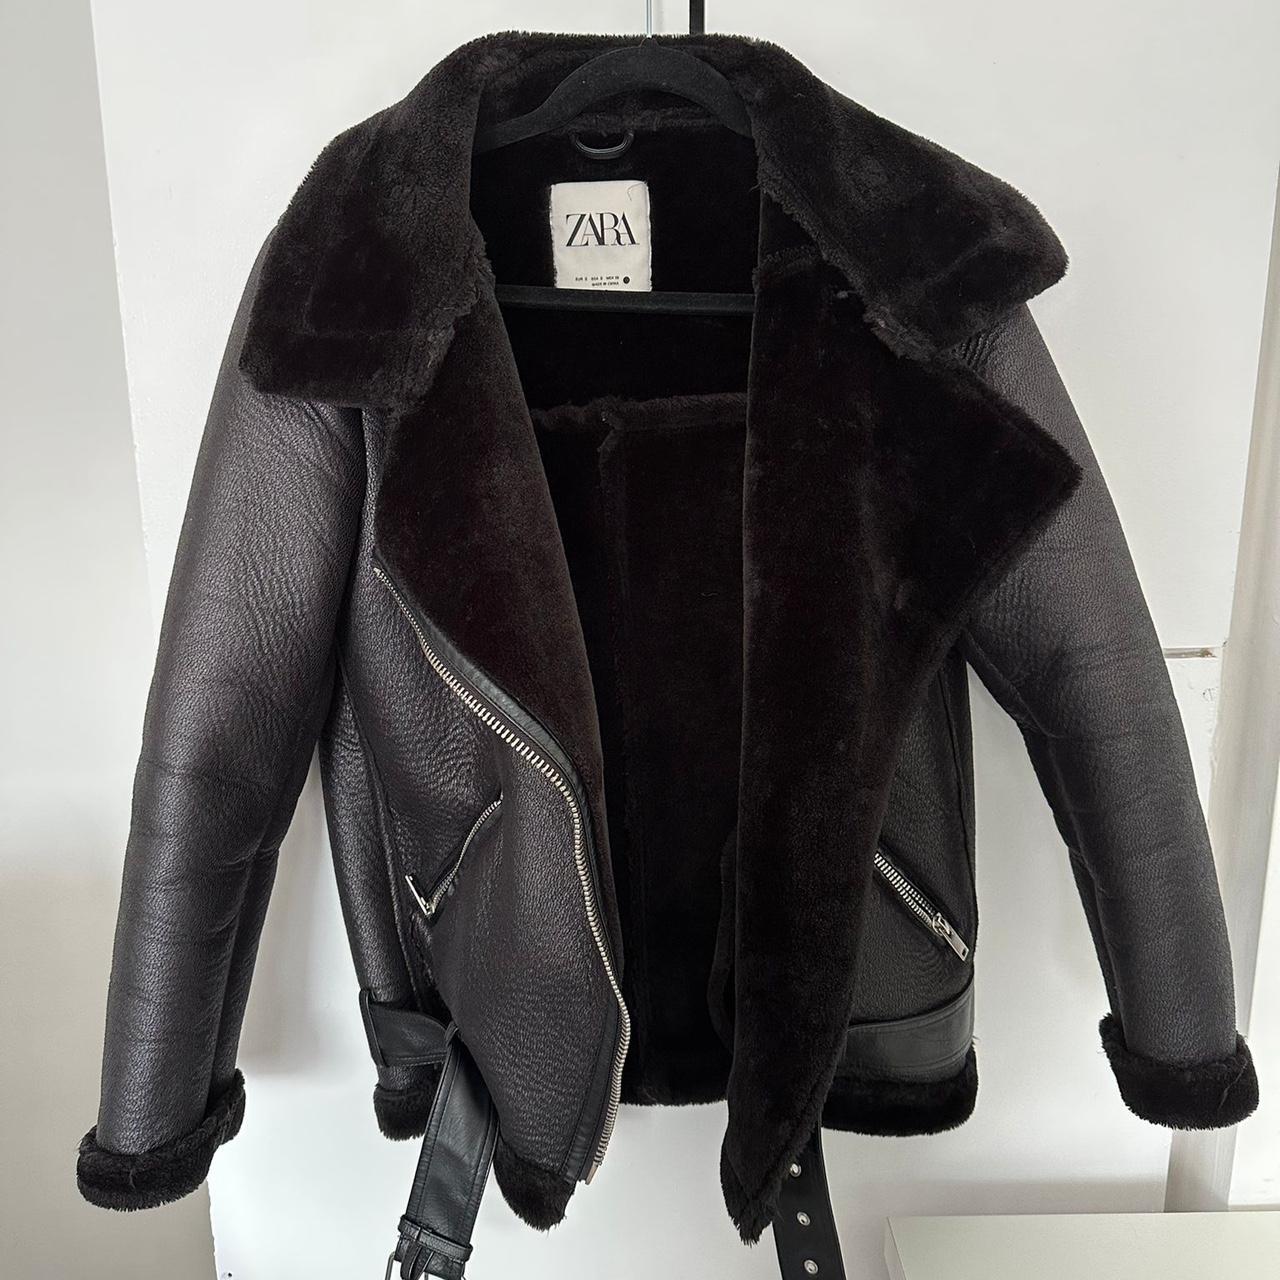 Zara Women's Black Jacket | Depop